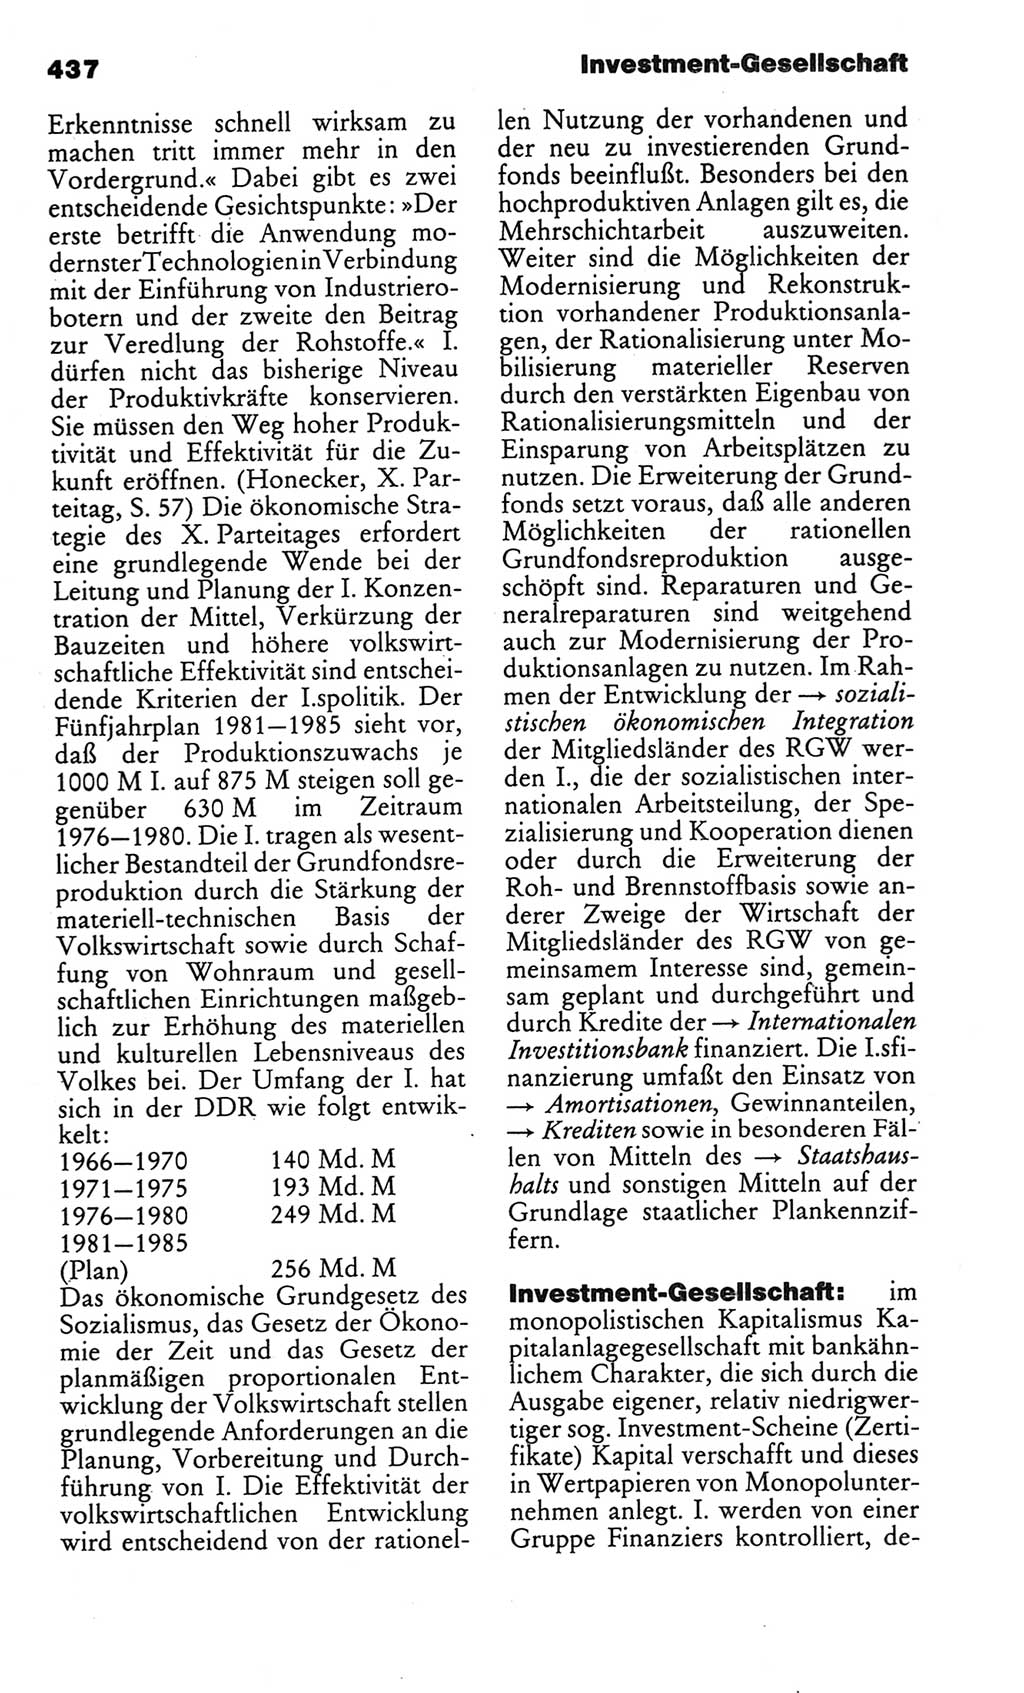 Kleines politisches Wörterbuch [Deutsche Demokratische Republik (DDR)] 1986, Seite 437 (Kl. pol. Wb. DDR 1986, S. 437)